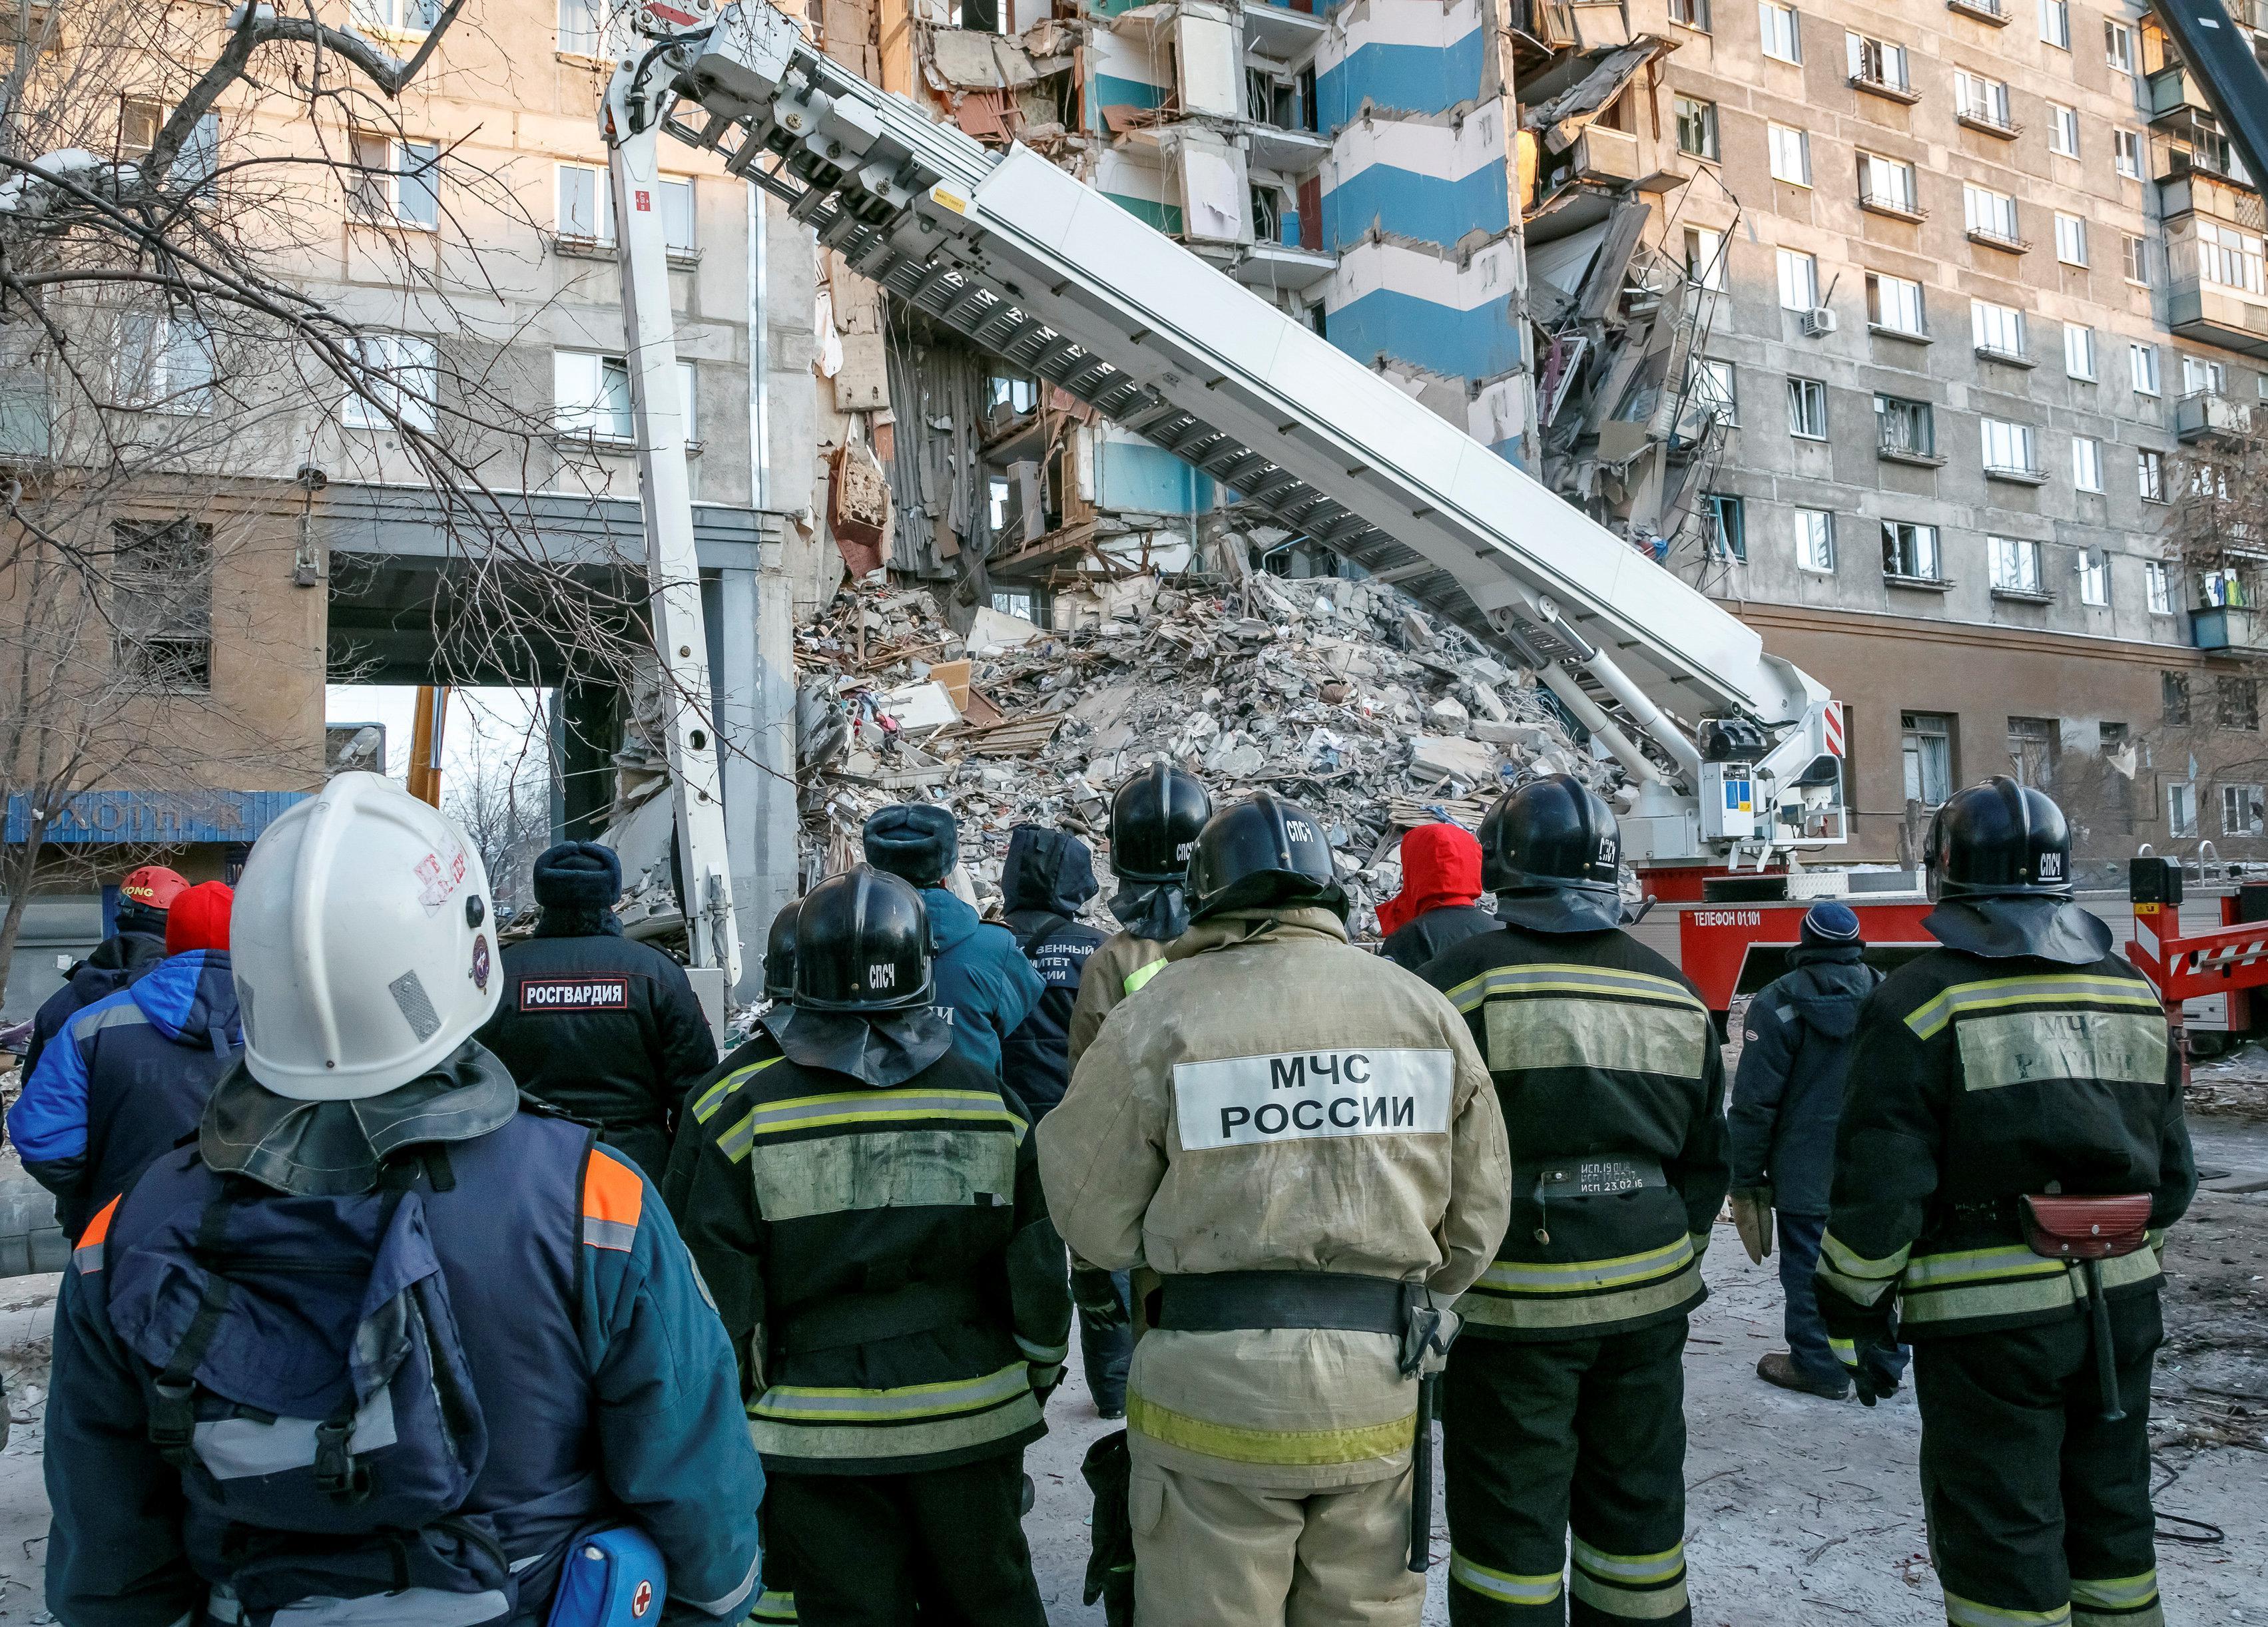 Rusyadaki gaz patlamasında ölü sayısı 37ye çıktı